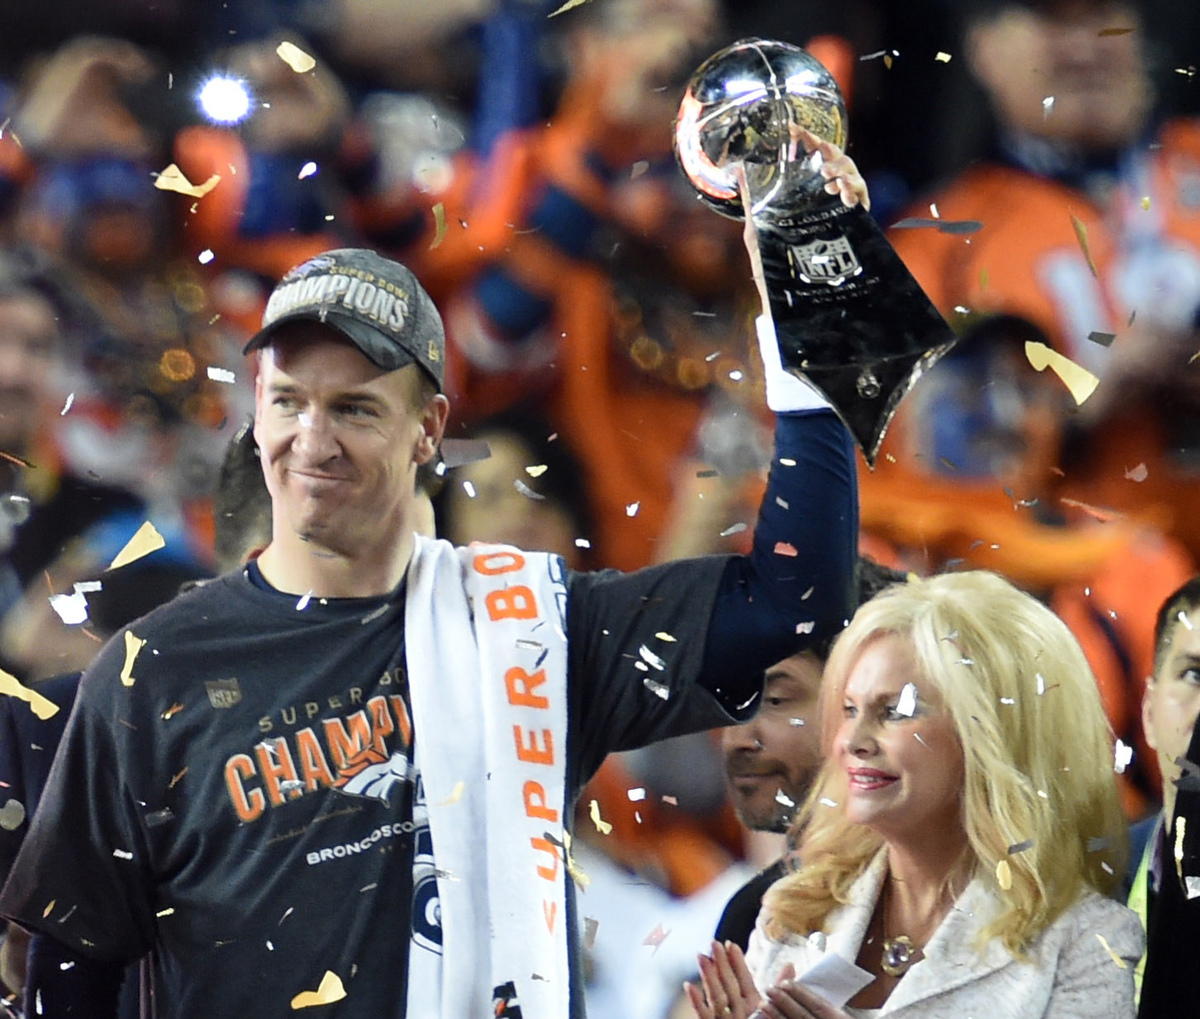 Ο κάθε παίκτης των νικητών Denver Broncos εισέπραξε για τη νίκη περίπου 90.000 ευρώ